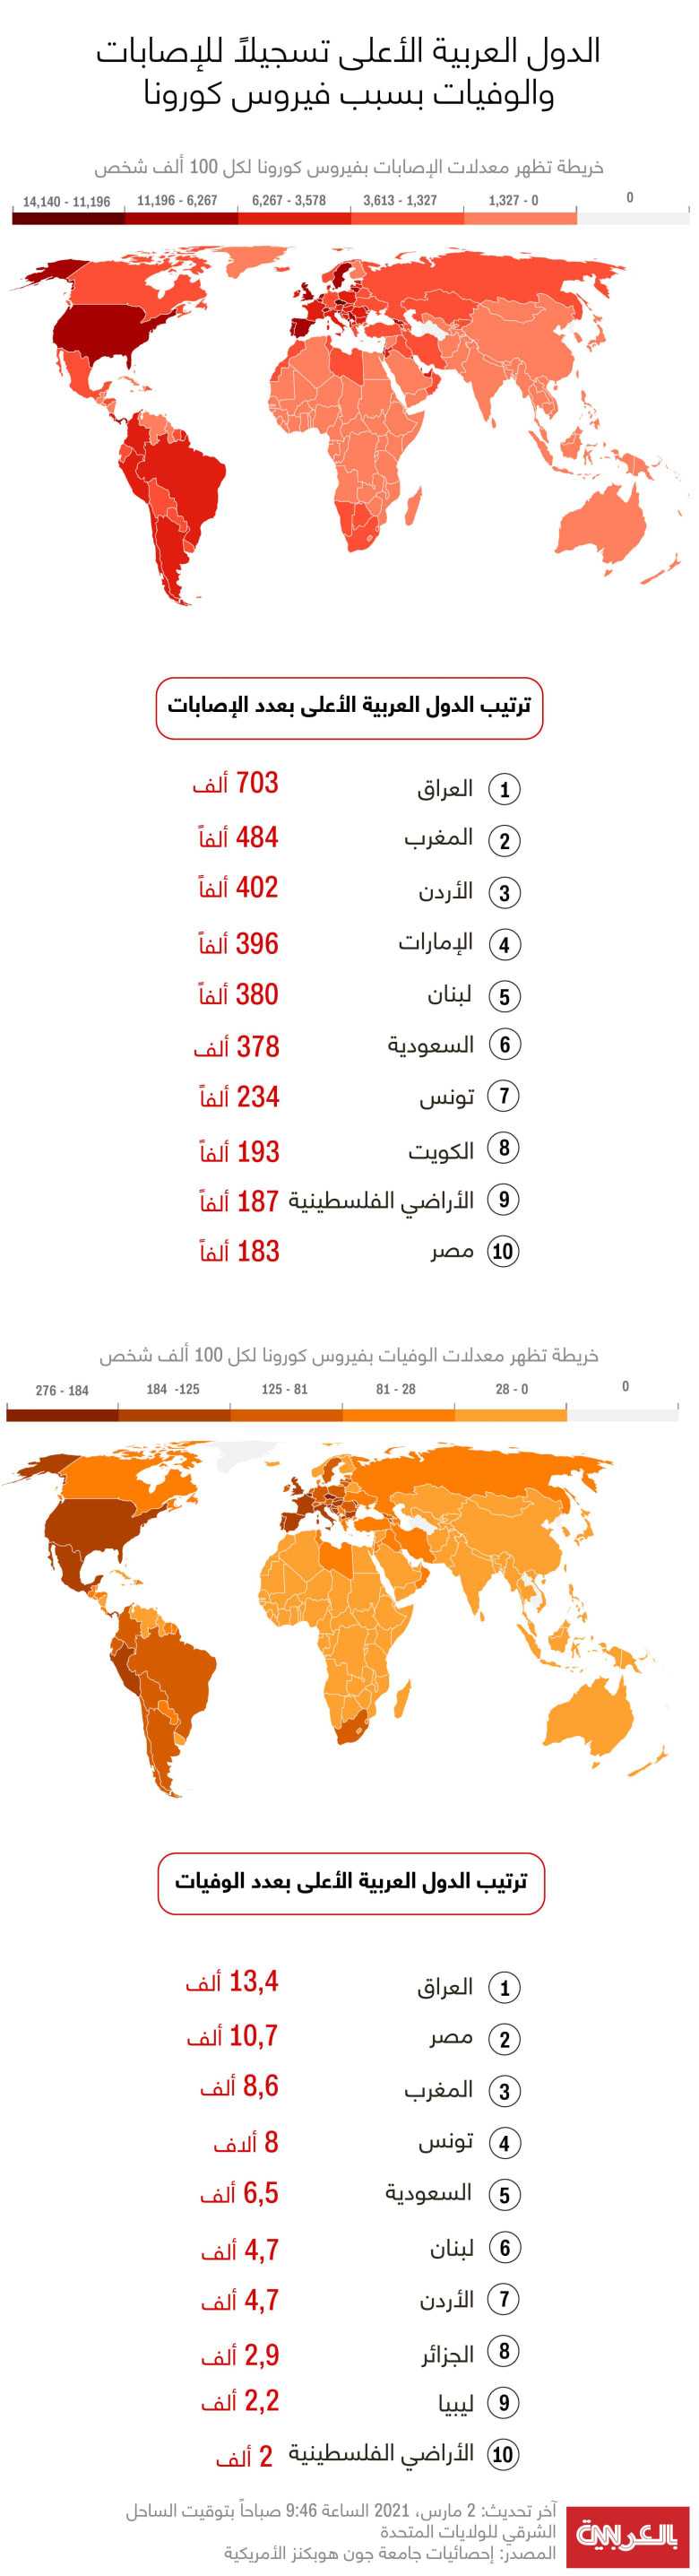 قائمة الدول العربية الأكثر إصابة بفيروس كورونا